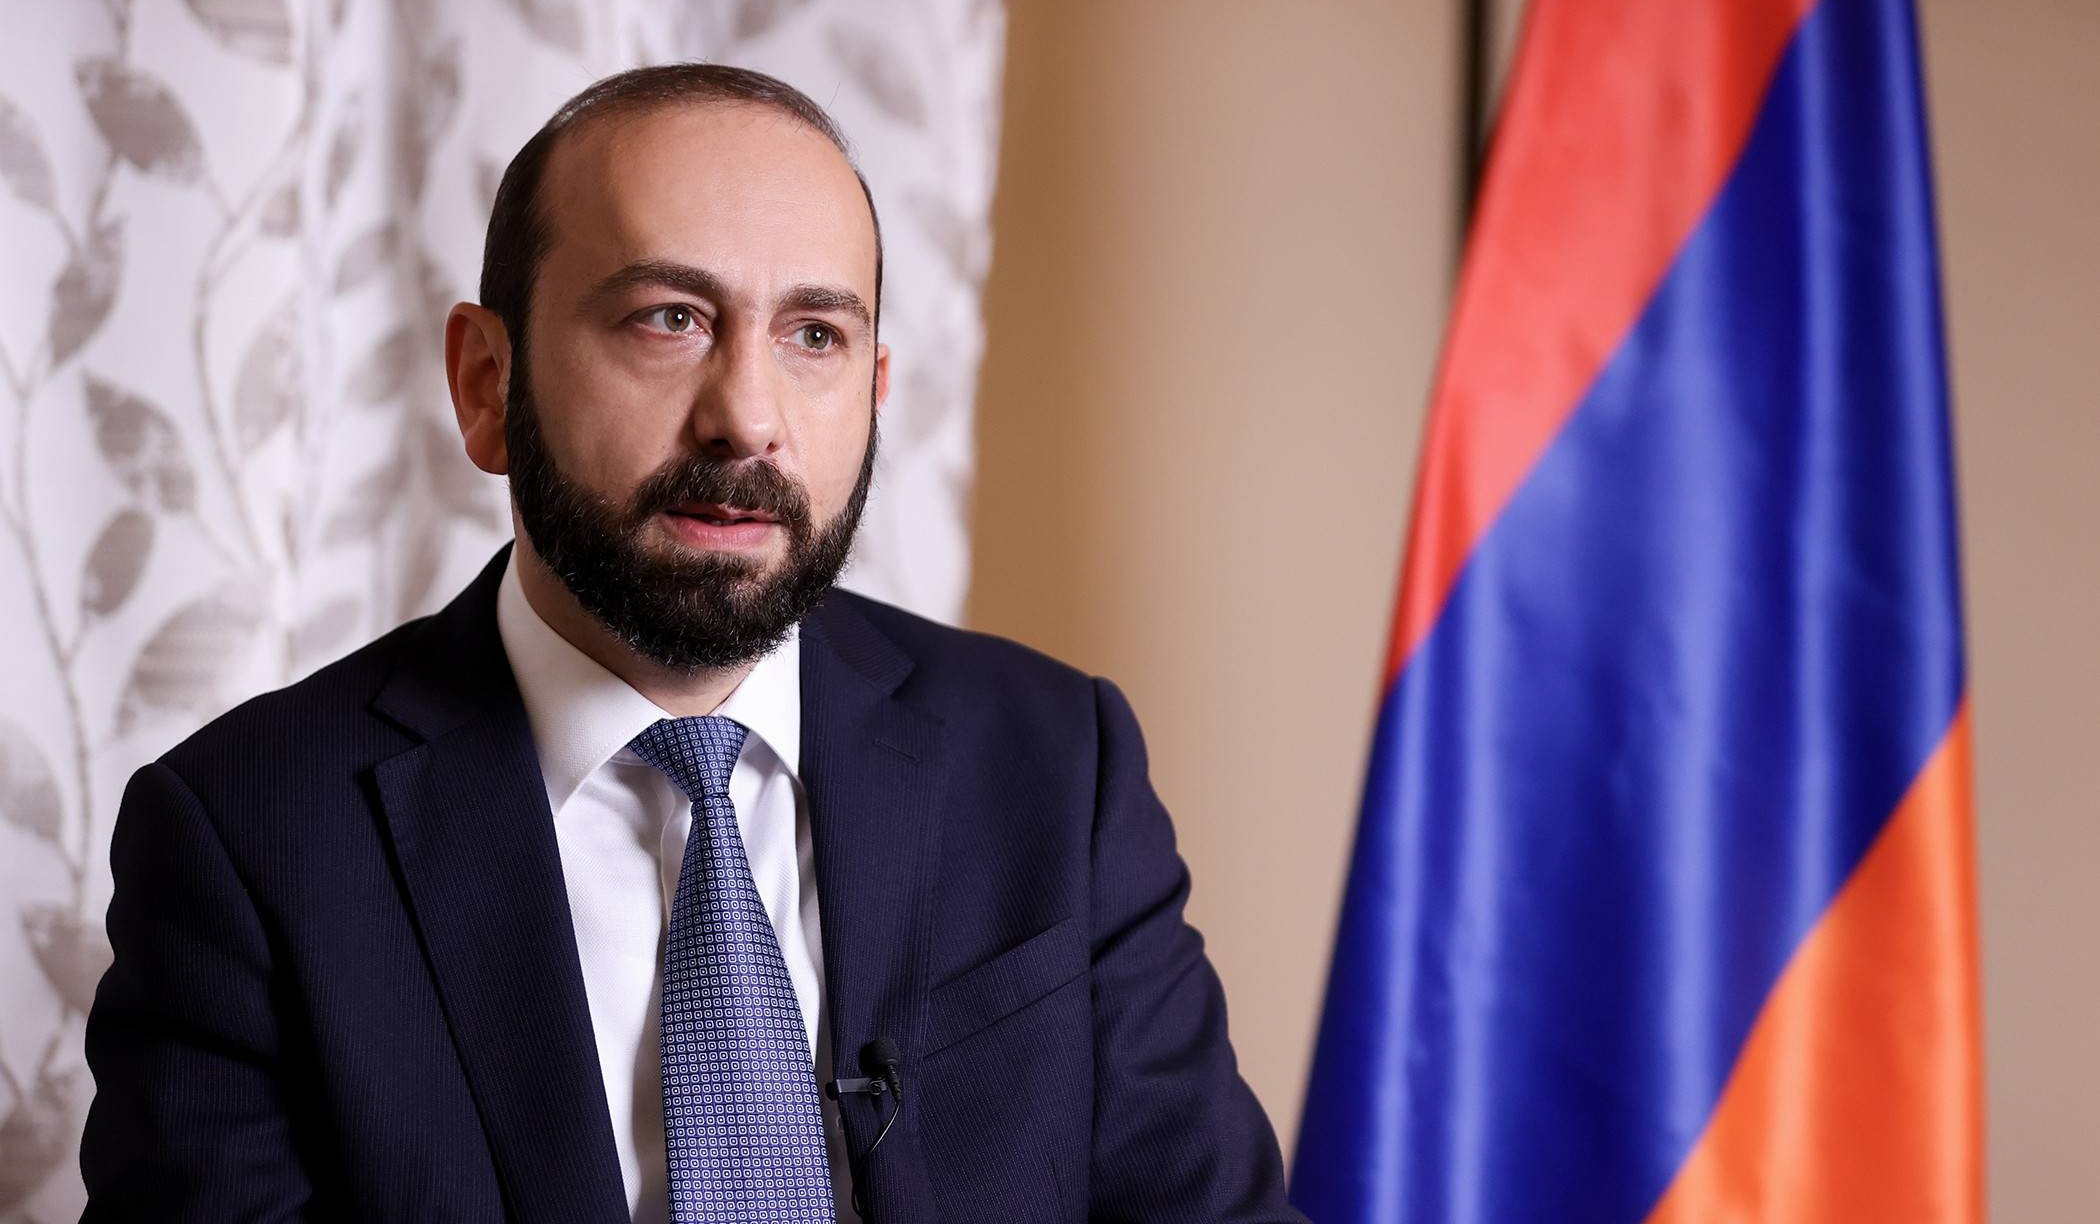 Հայաստանն էականորեն խորացնում է իր համագործակցությունը Եվրոպական միության և ԱՄՆ-ի հետ. ԱԳ նախարար